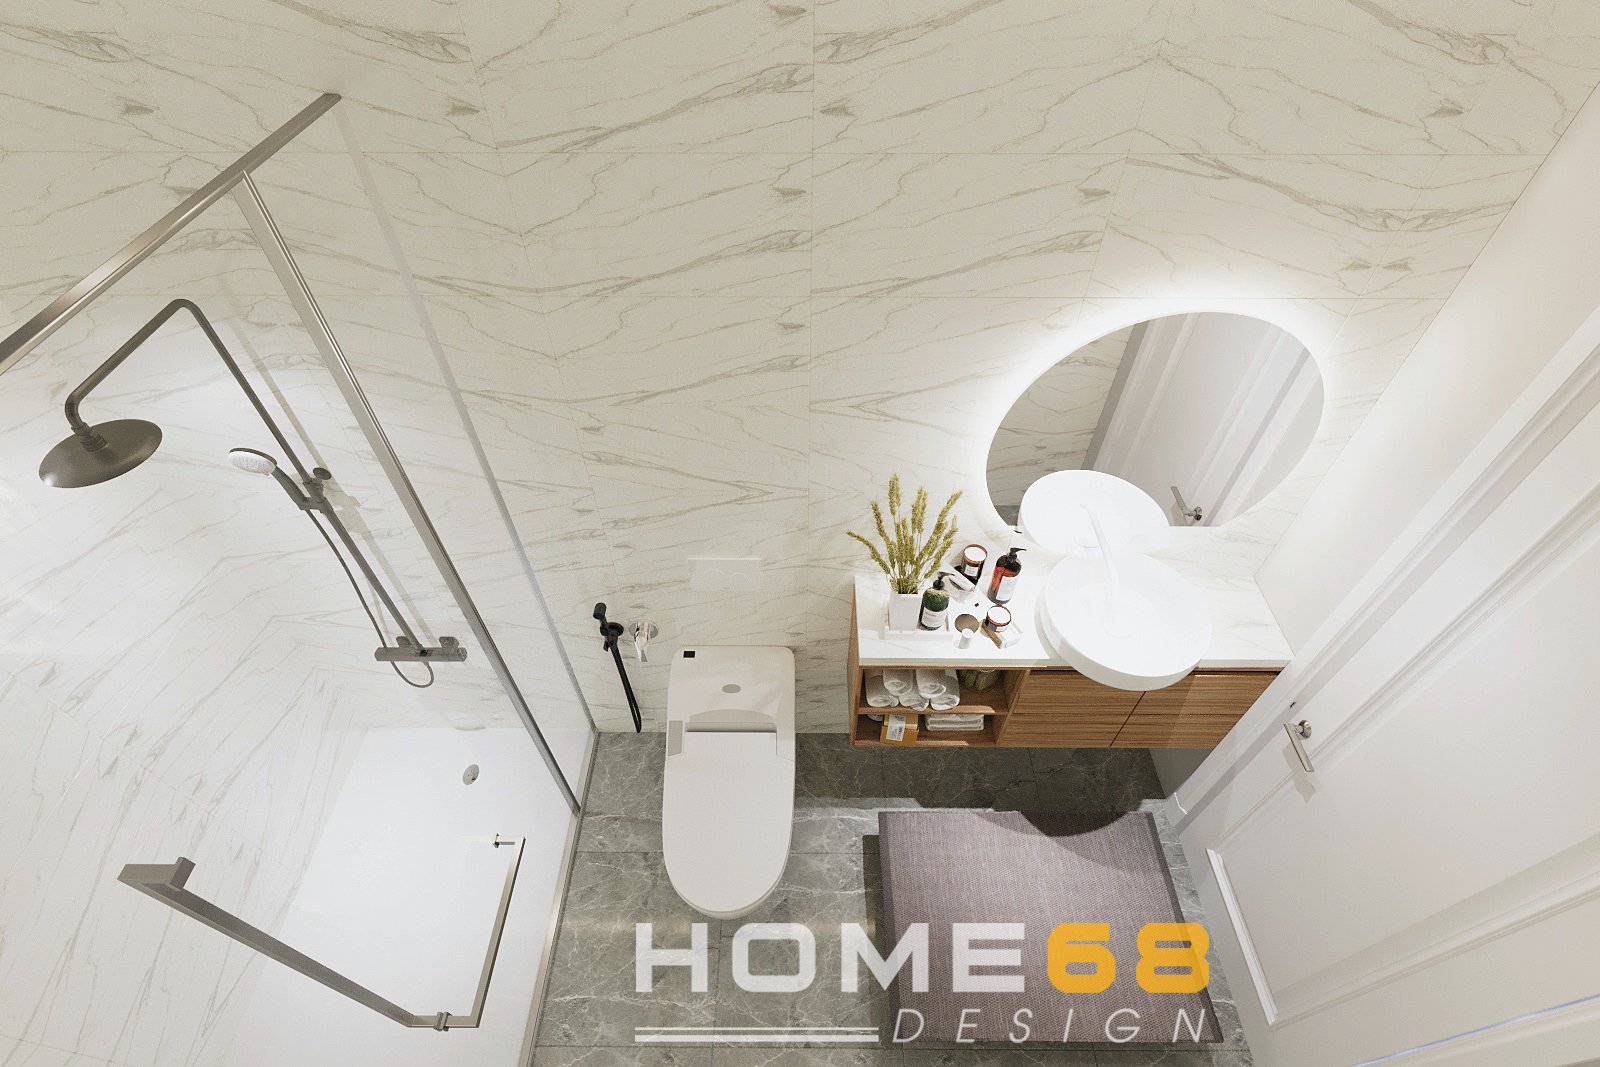 Thiết kế nội thất nhà vệ sinh tầng 2 hiện đại, độc đáo- HOME68